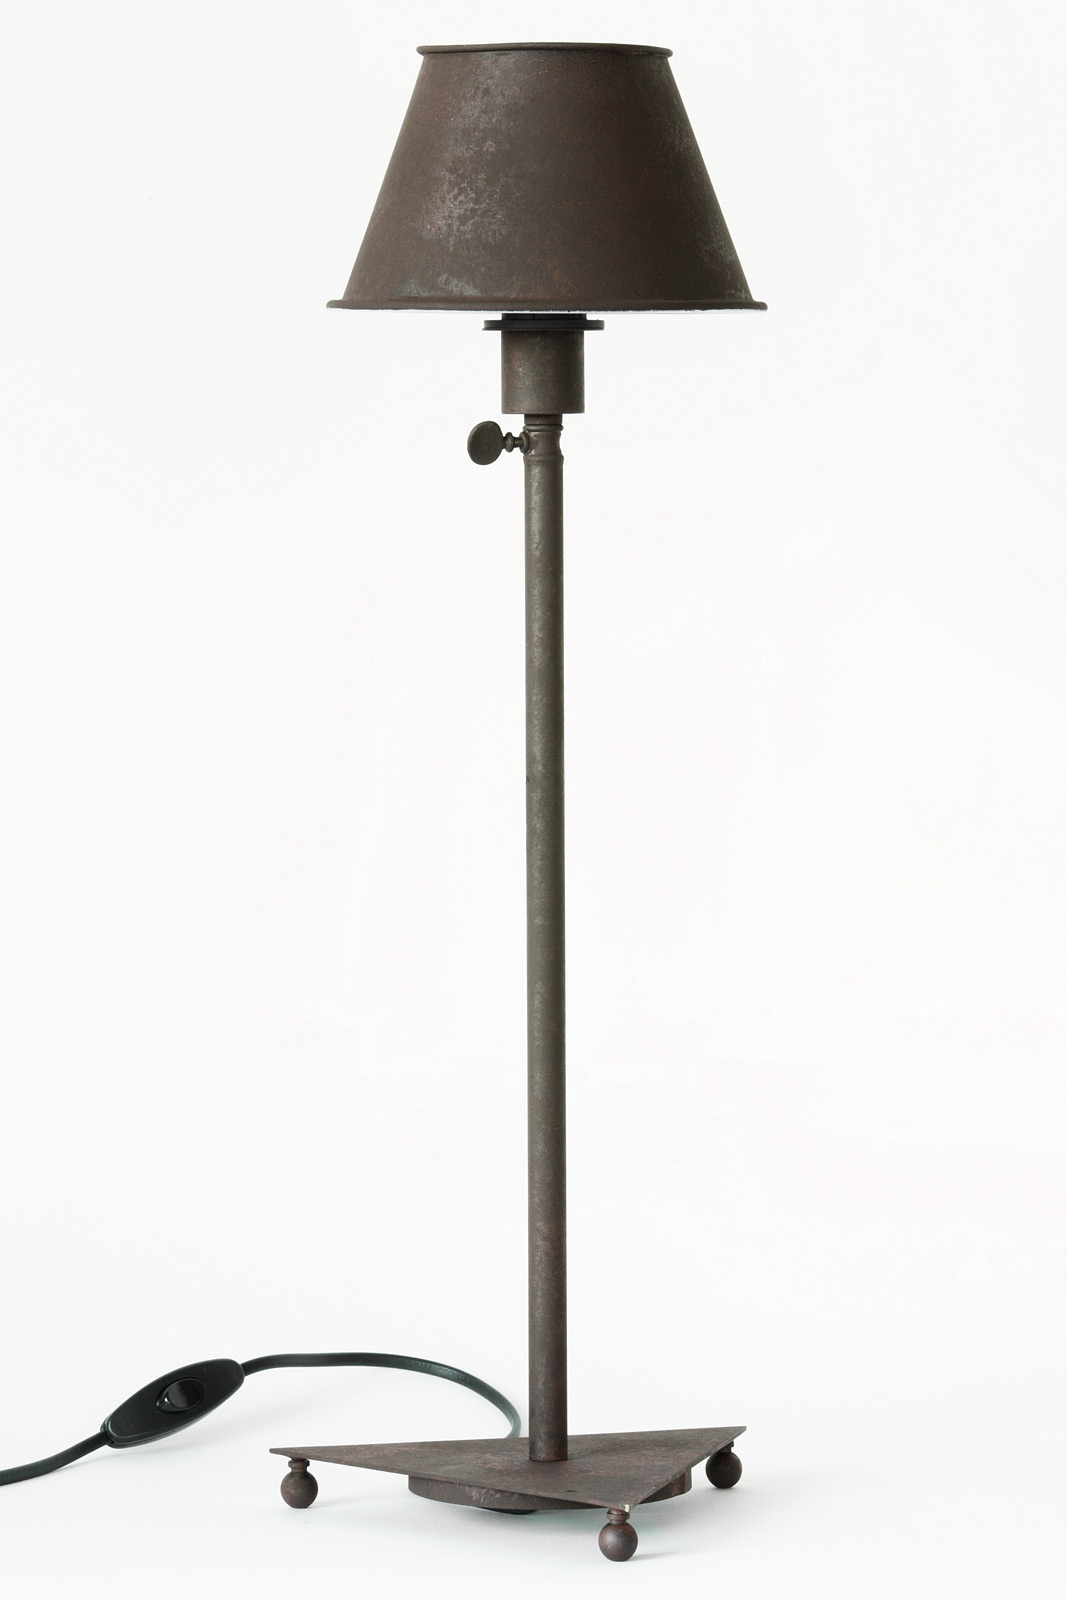 BERMUDA Französische Messing-Tischleuchte: Hohe französische Tischleuchte bzw. Beistell-Lampe, hier rustikal in der Ausführung Edelrost-Farbe